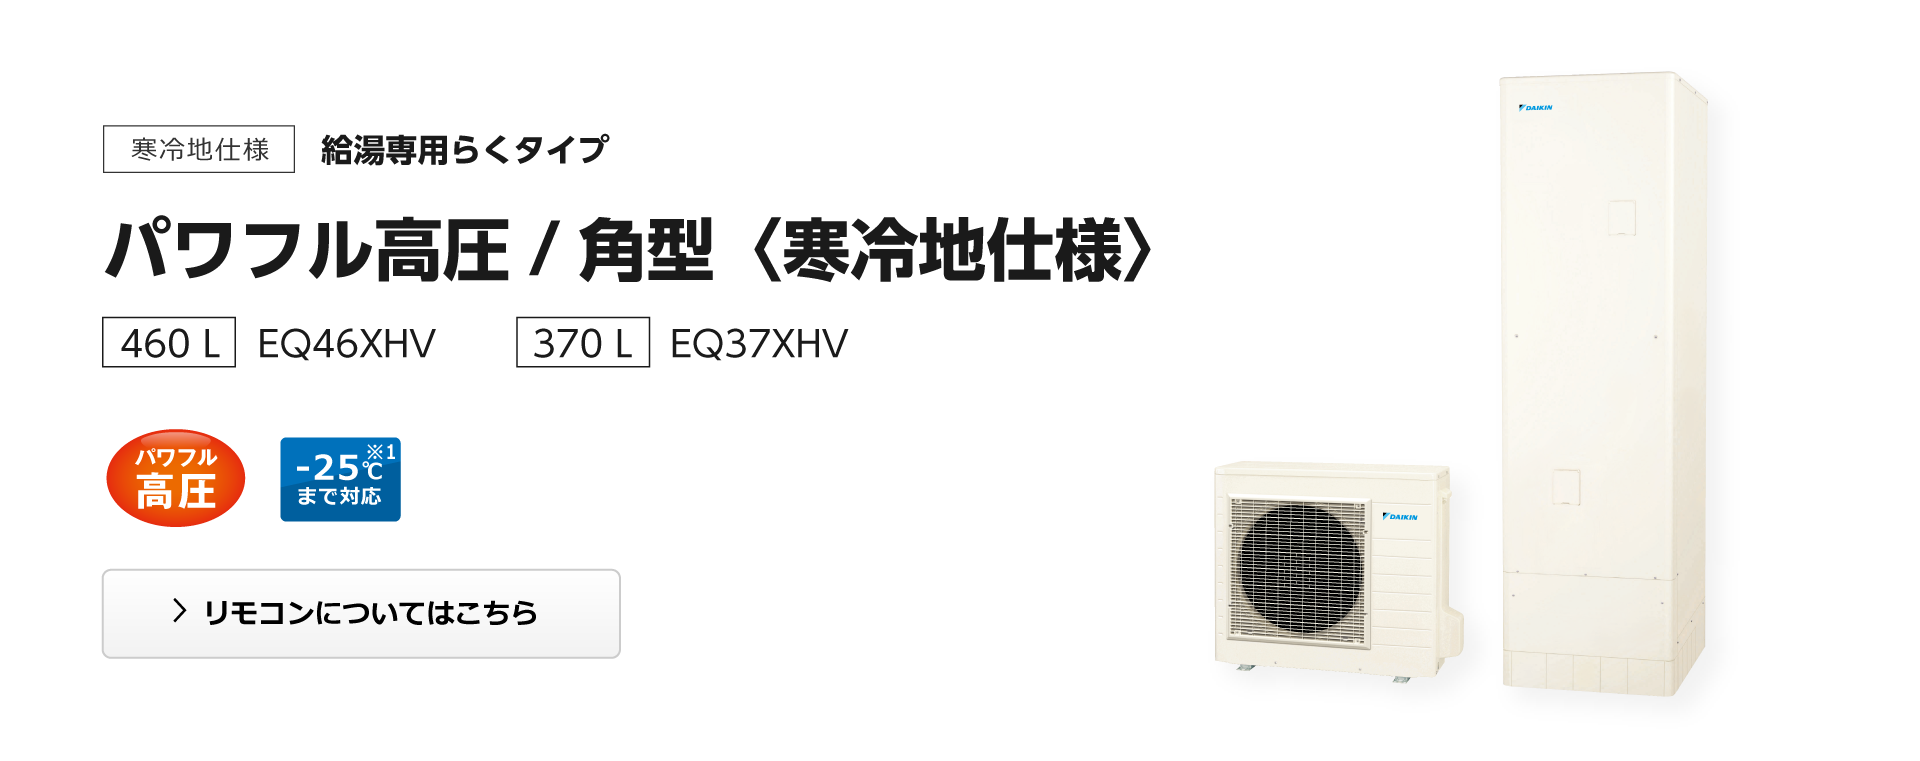 ダイキン EQ37XHV エコキュート 本体のみ 角型 寒冷地仕様 パワフル高圧 370L [♪] 通販